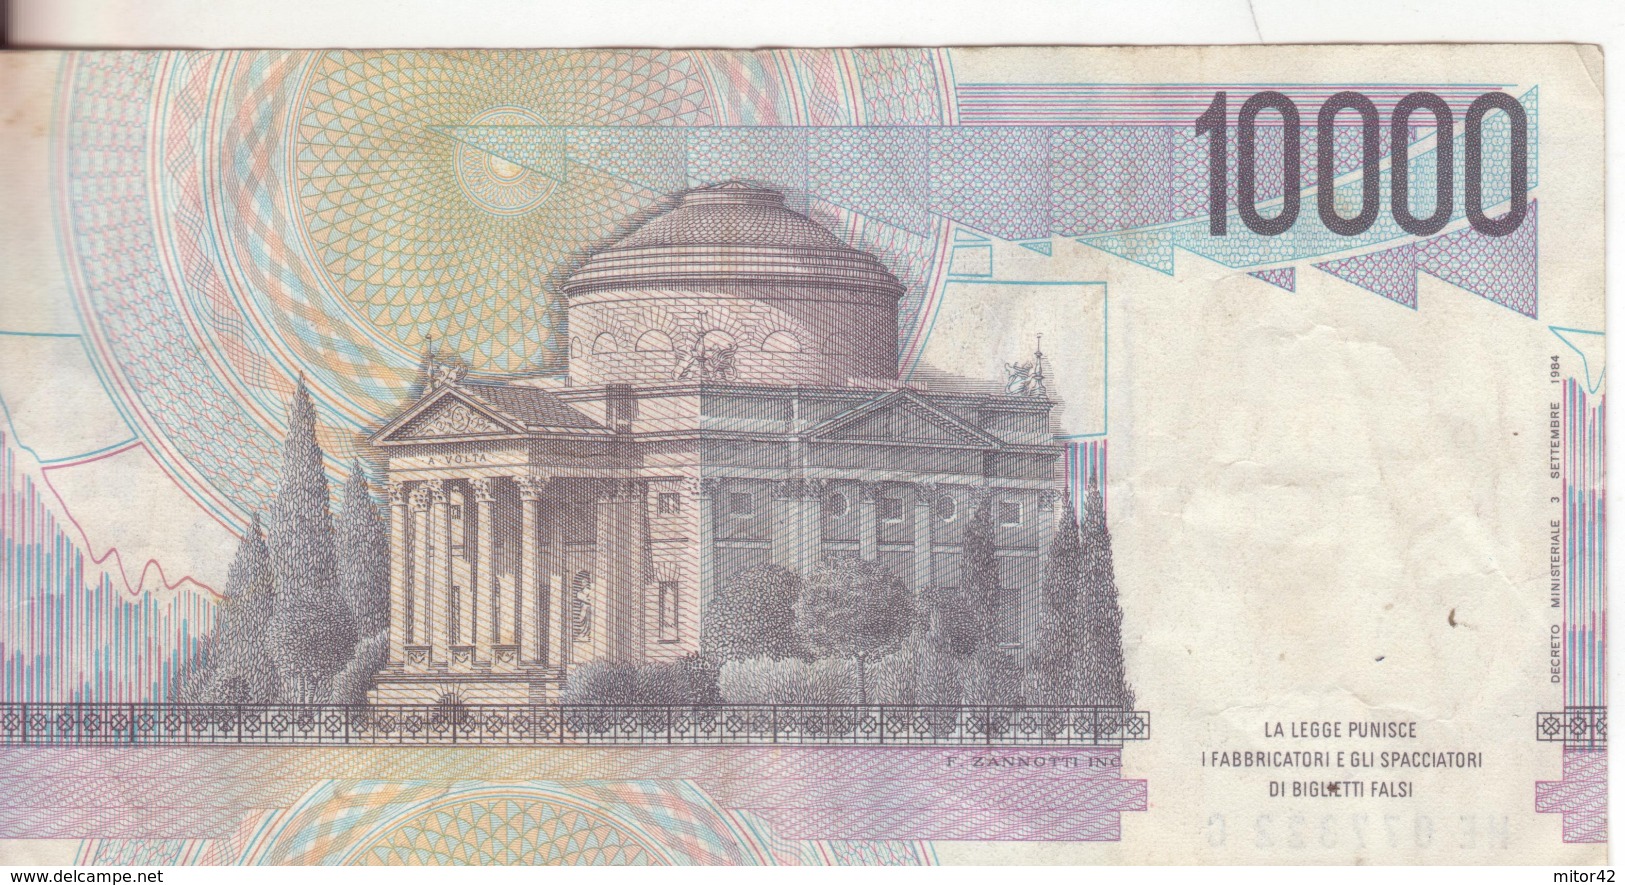 45*-Cartamoneta-Banconota  Italia Repubblica Da L.10.000 Volta-serie-HE 077322 C-Condizione:Circolata - 10000 Lire